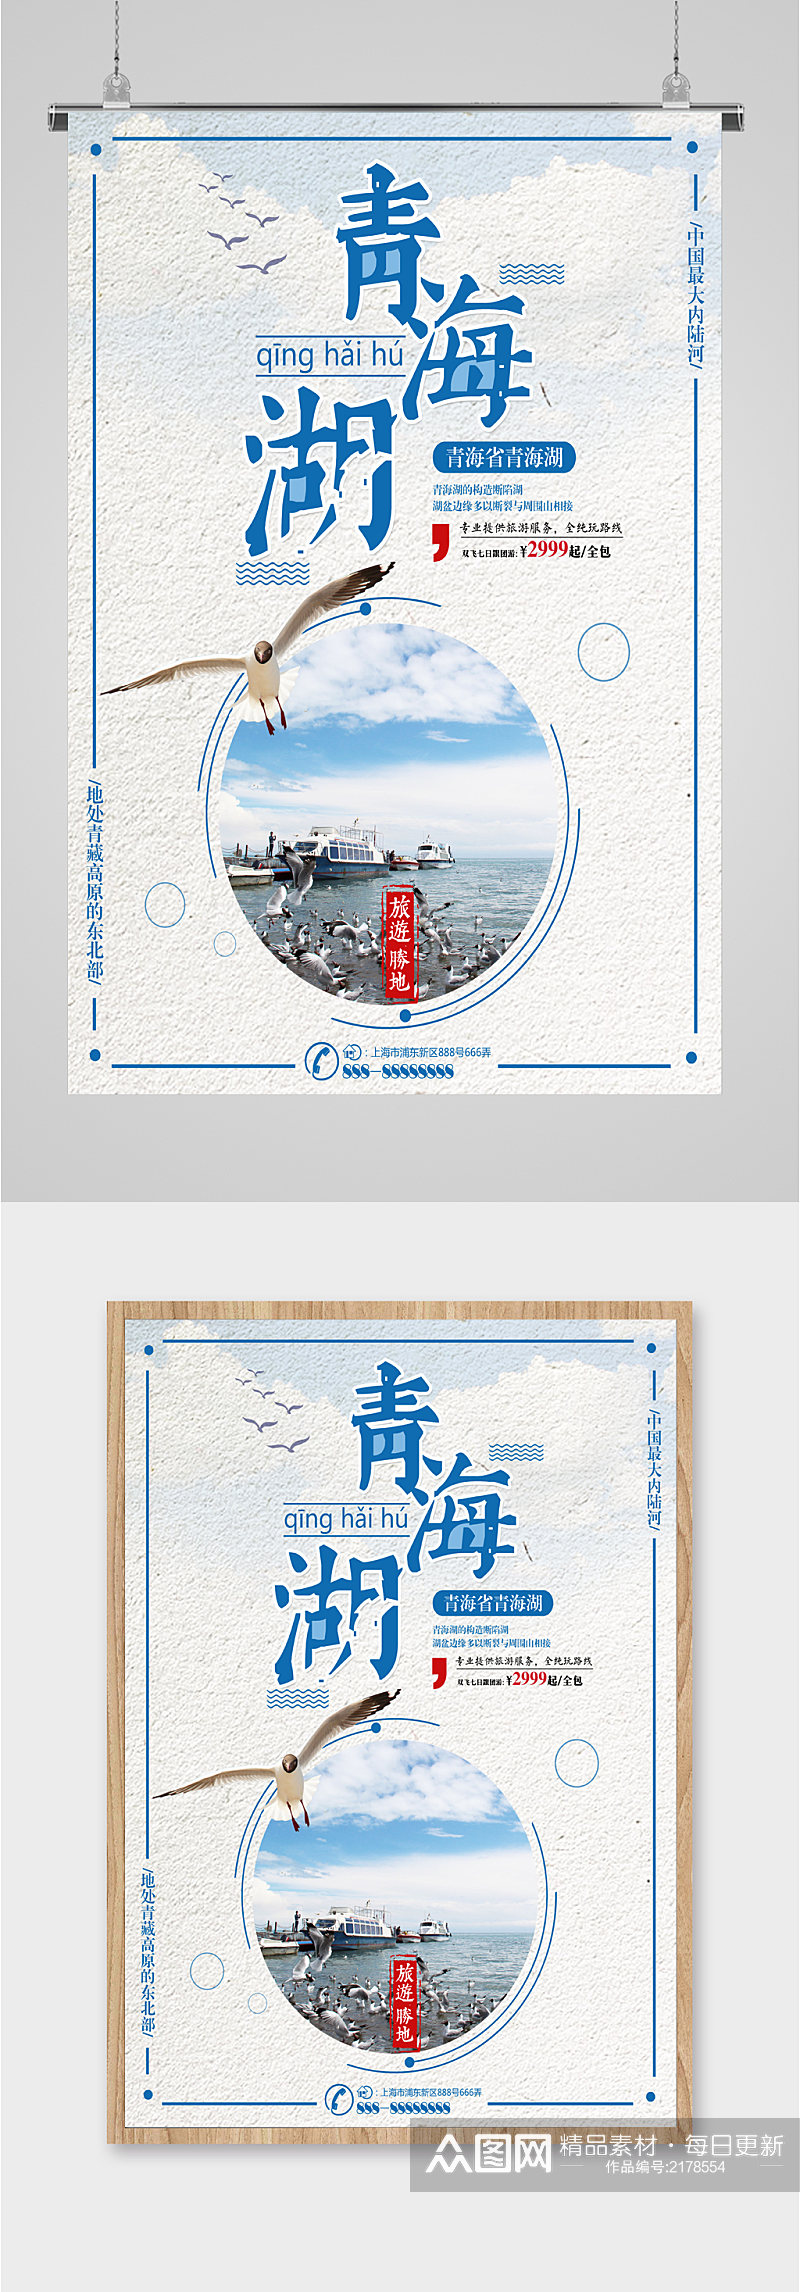 青海湖风景旅游海报素材